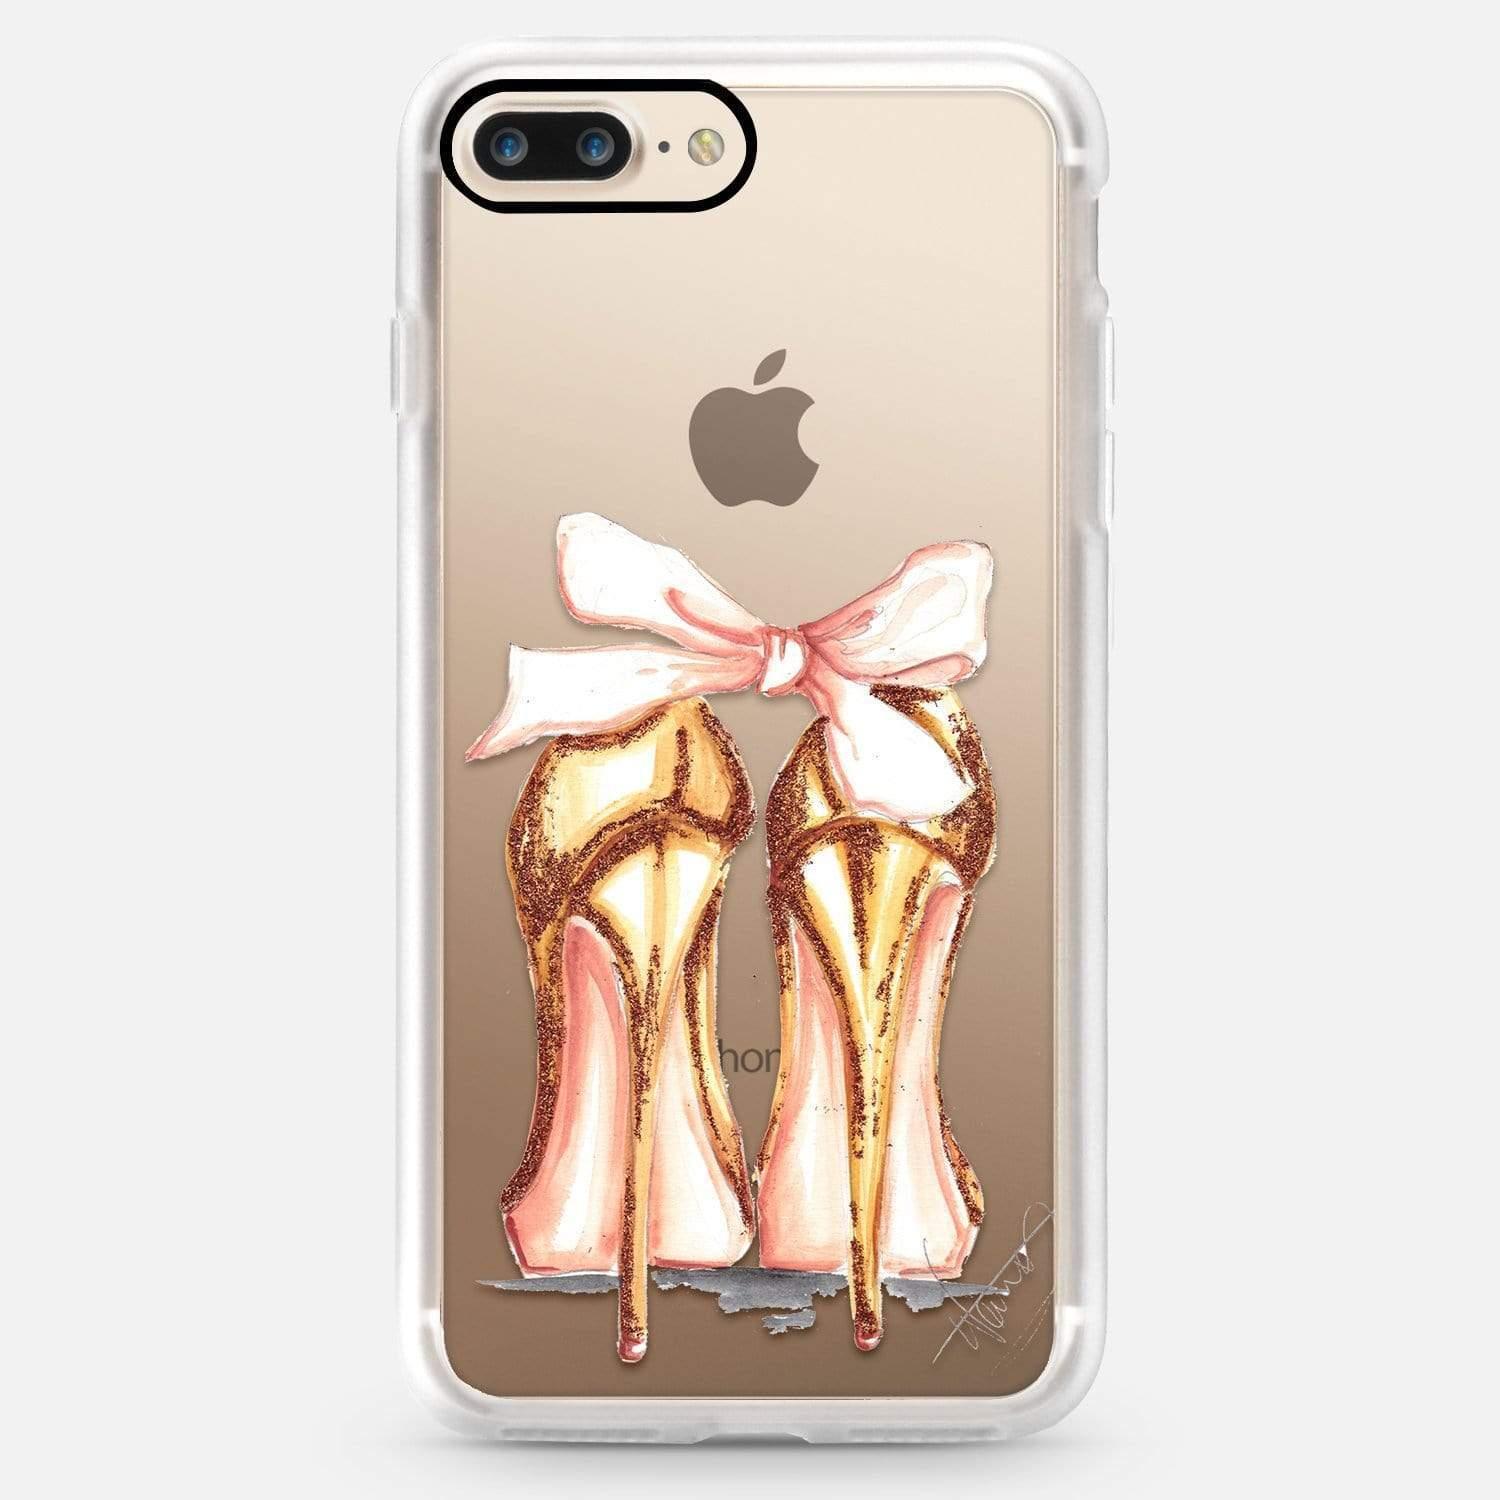 كفر ايفون 7/8 - شفاف CASETIFY - Snap Case Golden Heels for iPhone 8/7 Plus